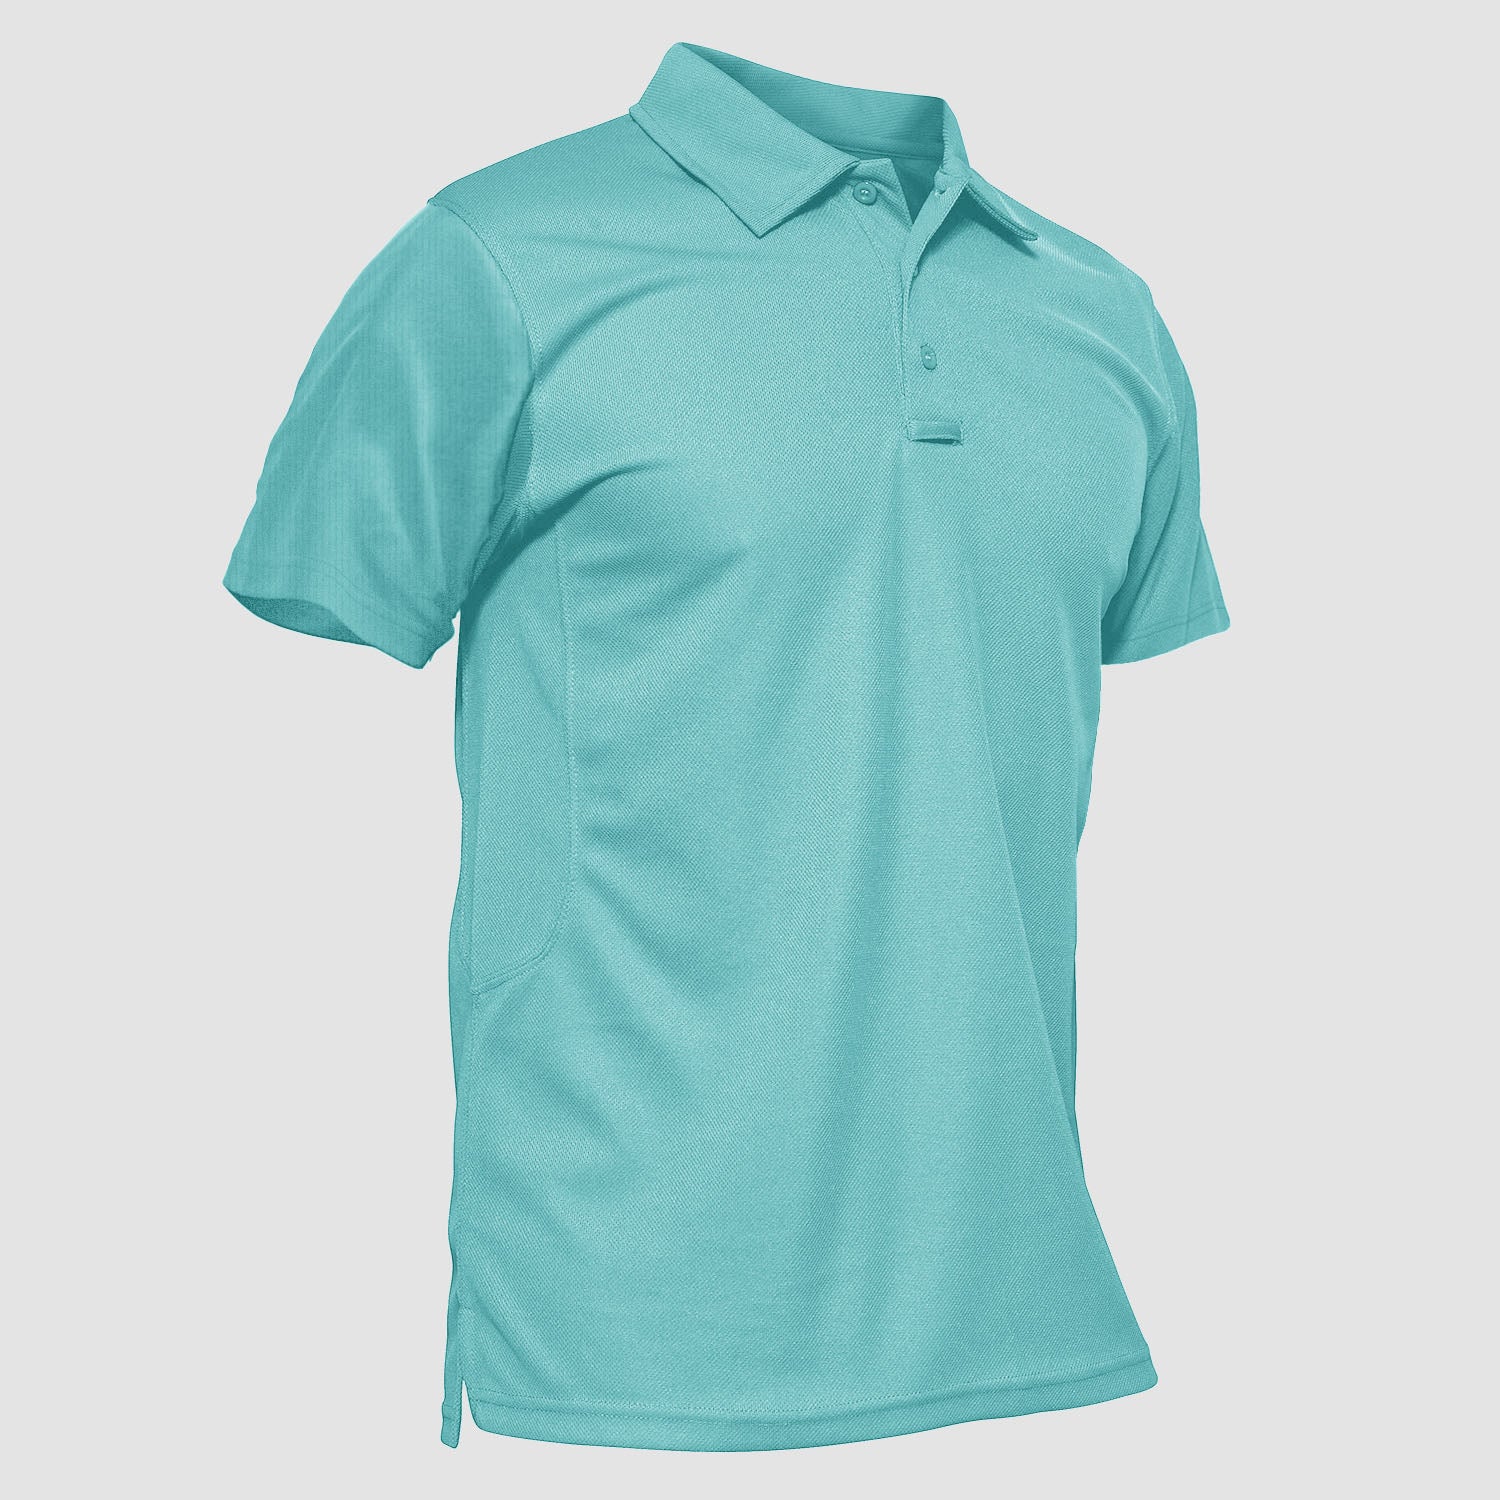 Grunt Style Men's Short Sleeve Button Lightweight Shirt Blue Size